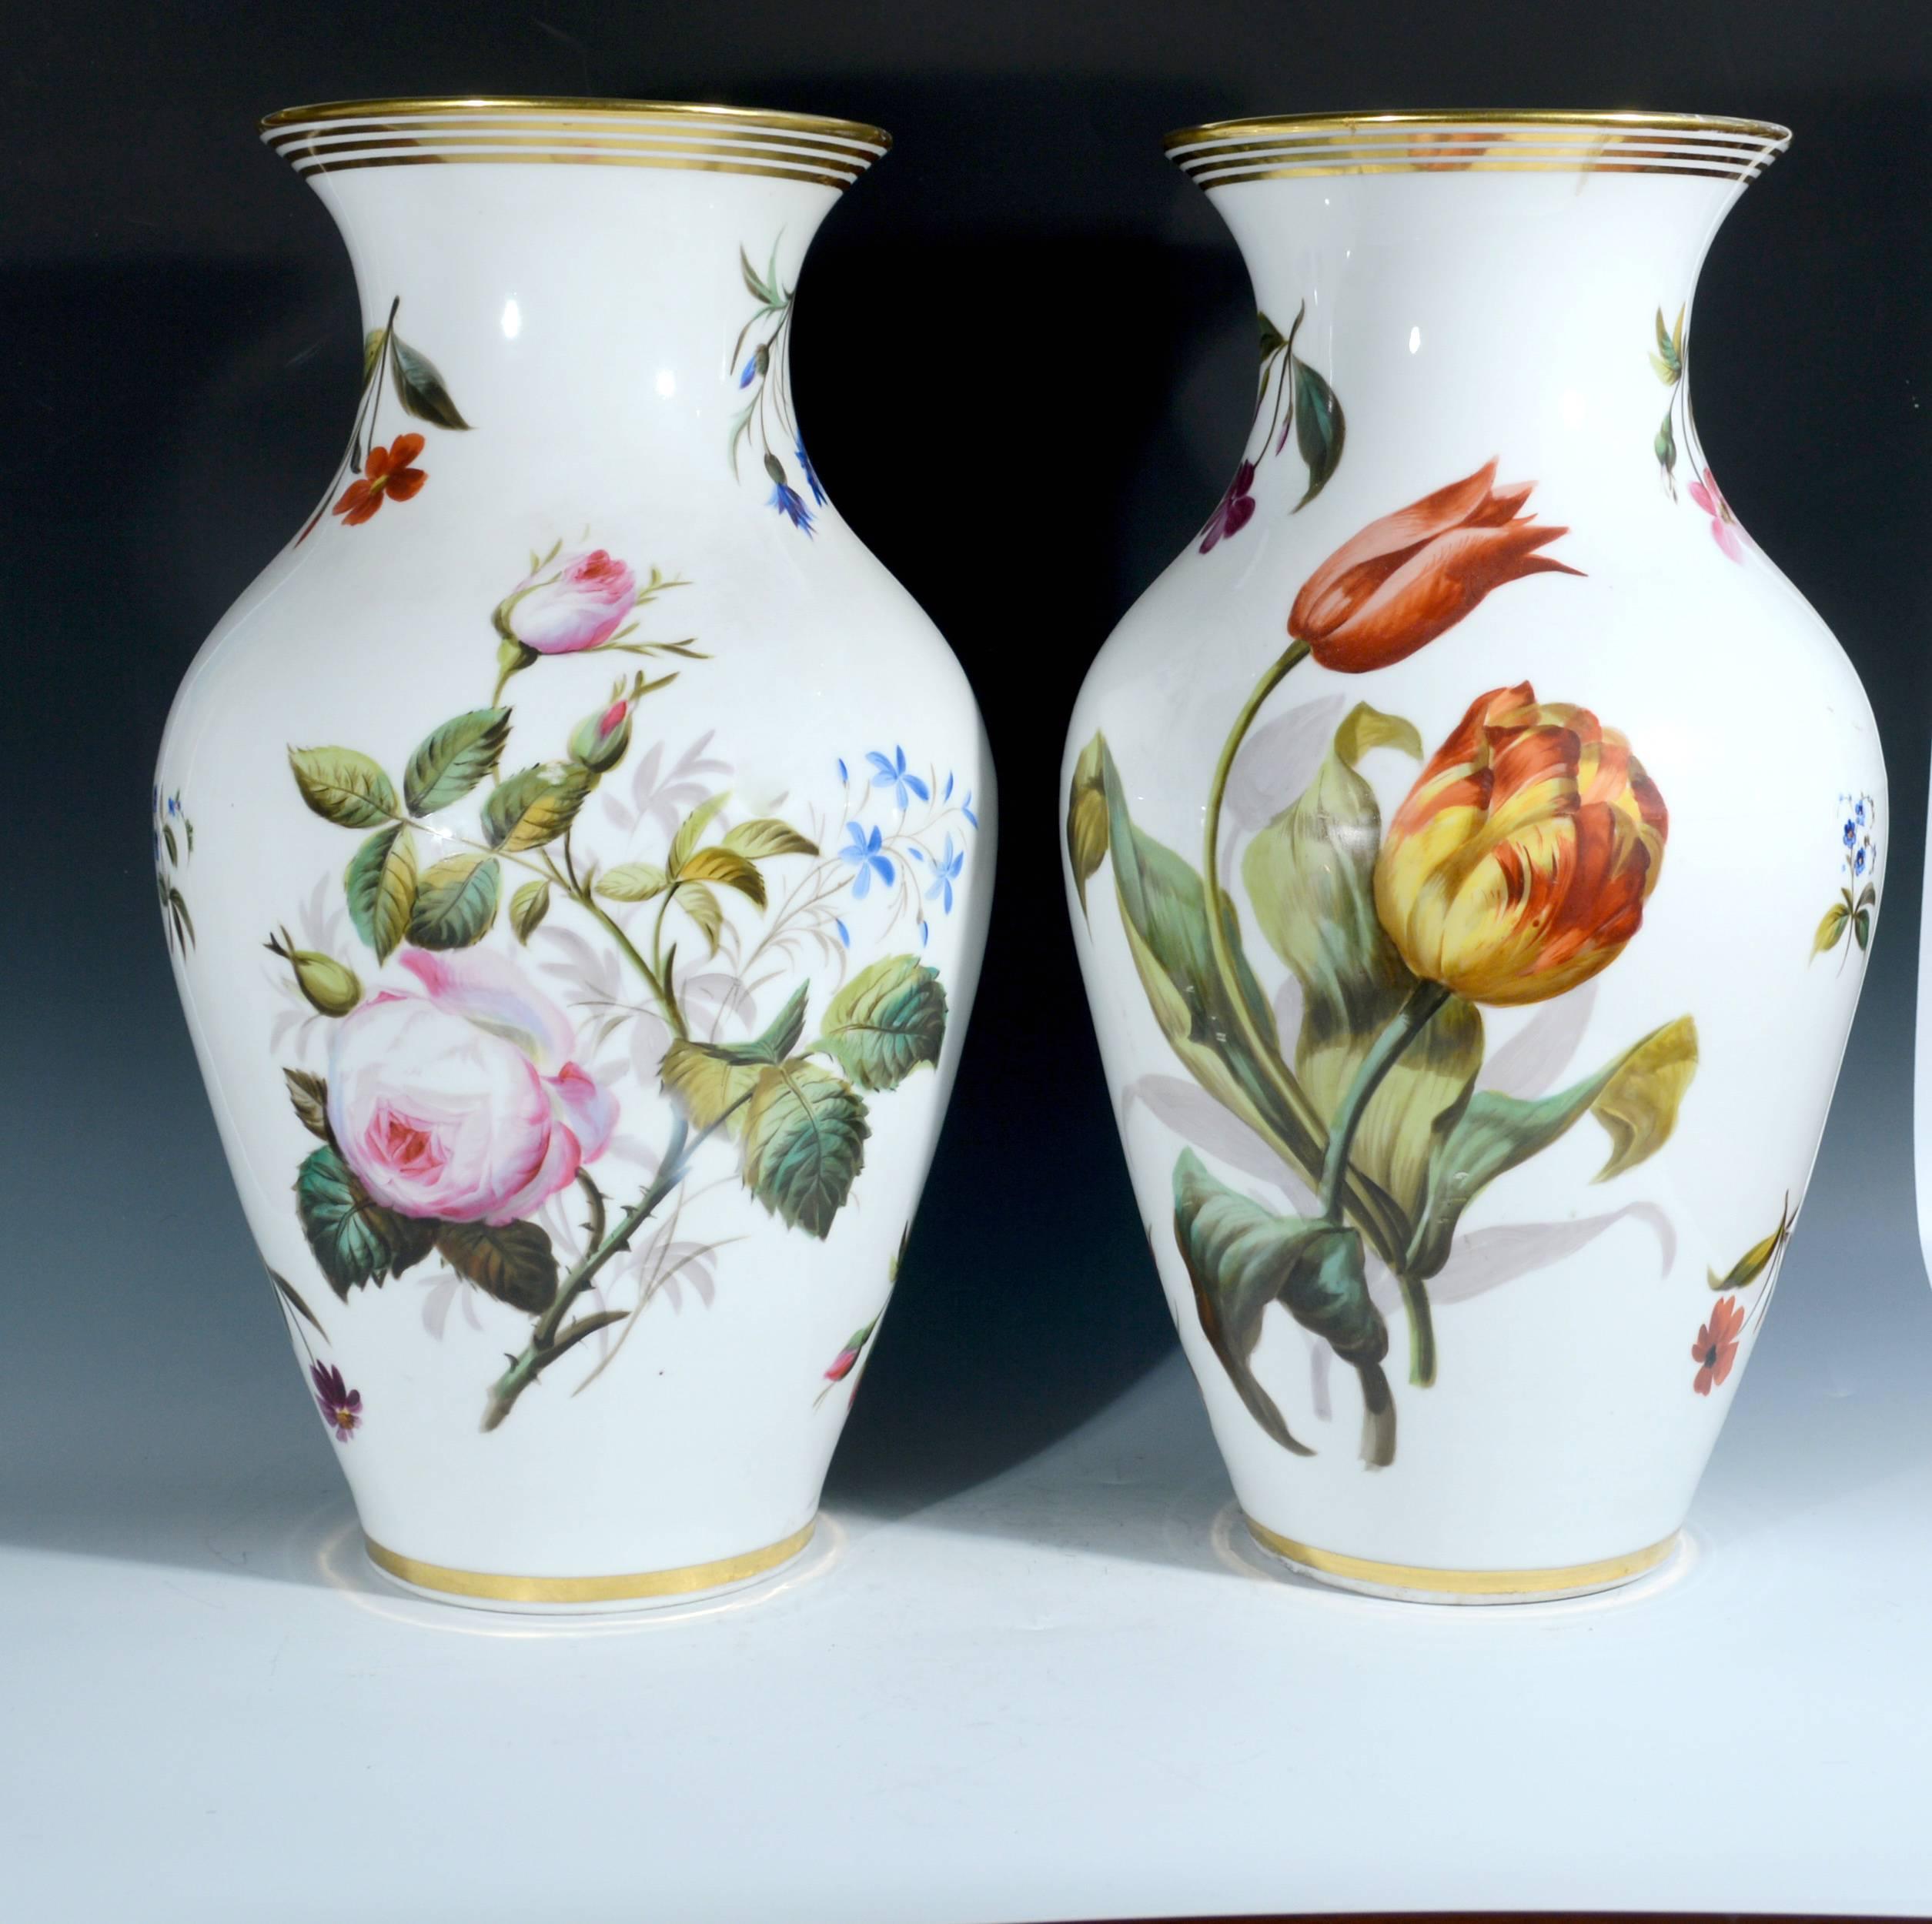 Paire de vases botaniques en porcelaine de Paris,
Milieu du XIXe siècle.

Chacun des vases de forme balustre a un col cylindrique et un bord évasé et est peint de bouquets floraux sur un fond blanc. Au verso, chacun d'eux présente un grand spécimen